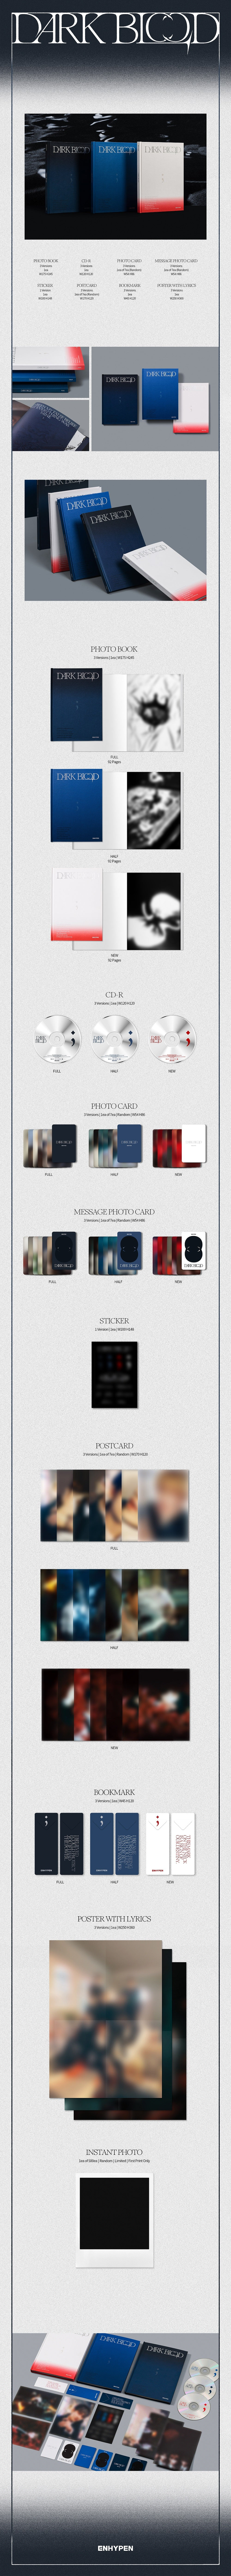 [PRE-ORDER] ENHYPEN - 4th Mini Album DARK BLOOD 엔하이픈 engene 다크블러드